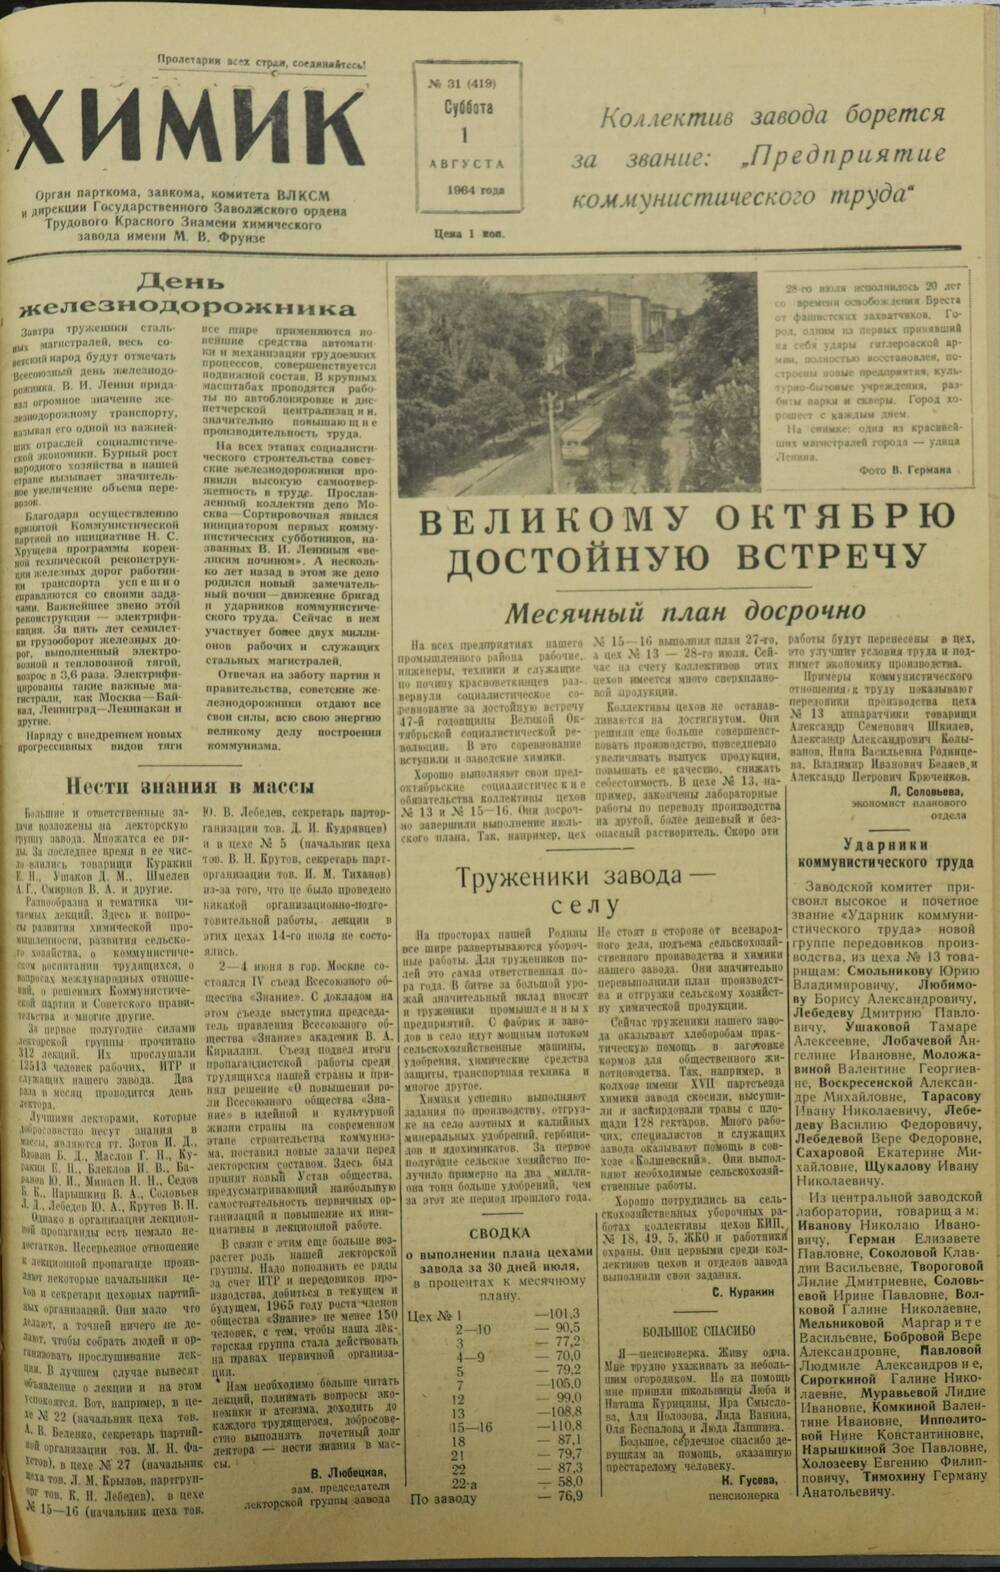 Газета «Химик» № 31 от 1 августа 1964 года.